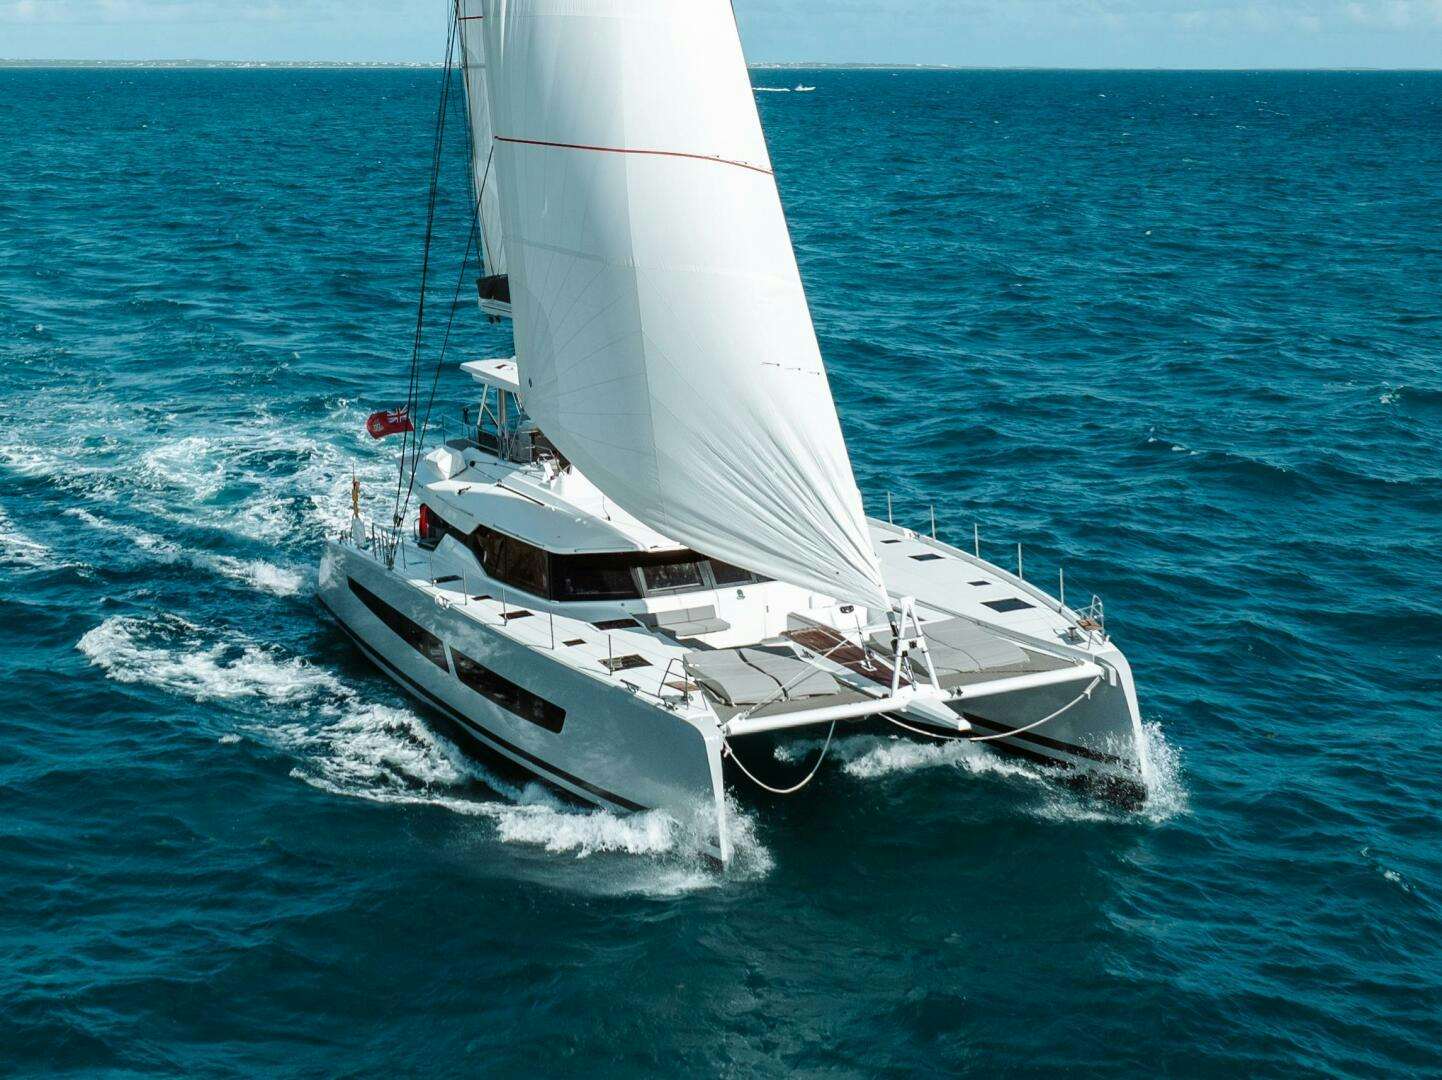 Oceanus
Yacht for Sale